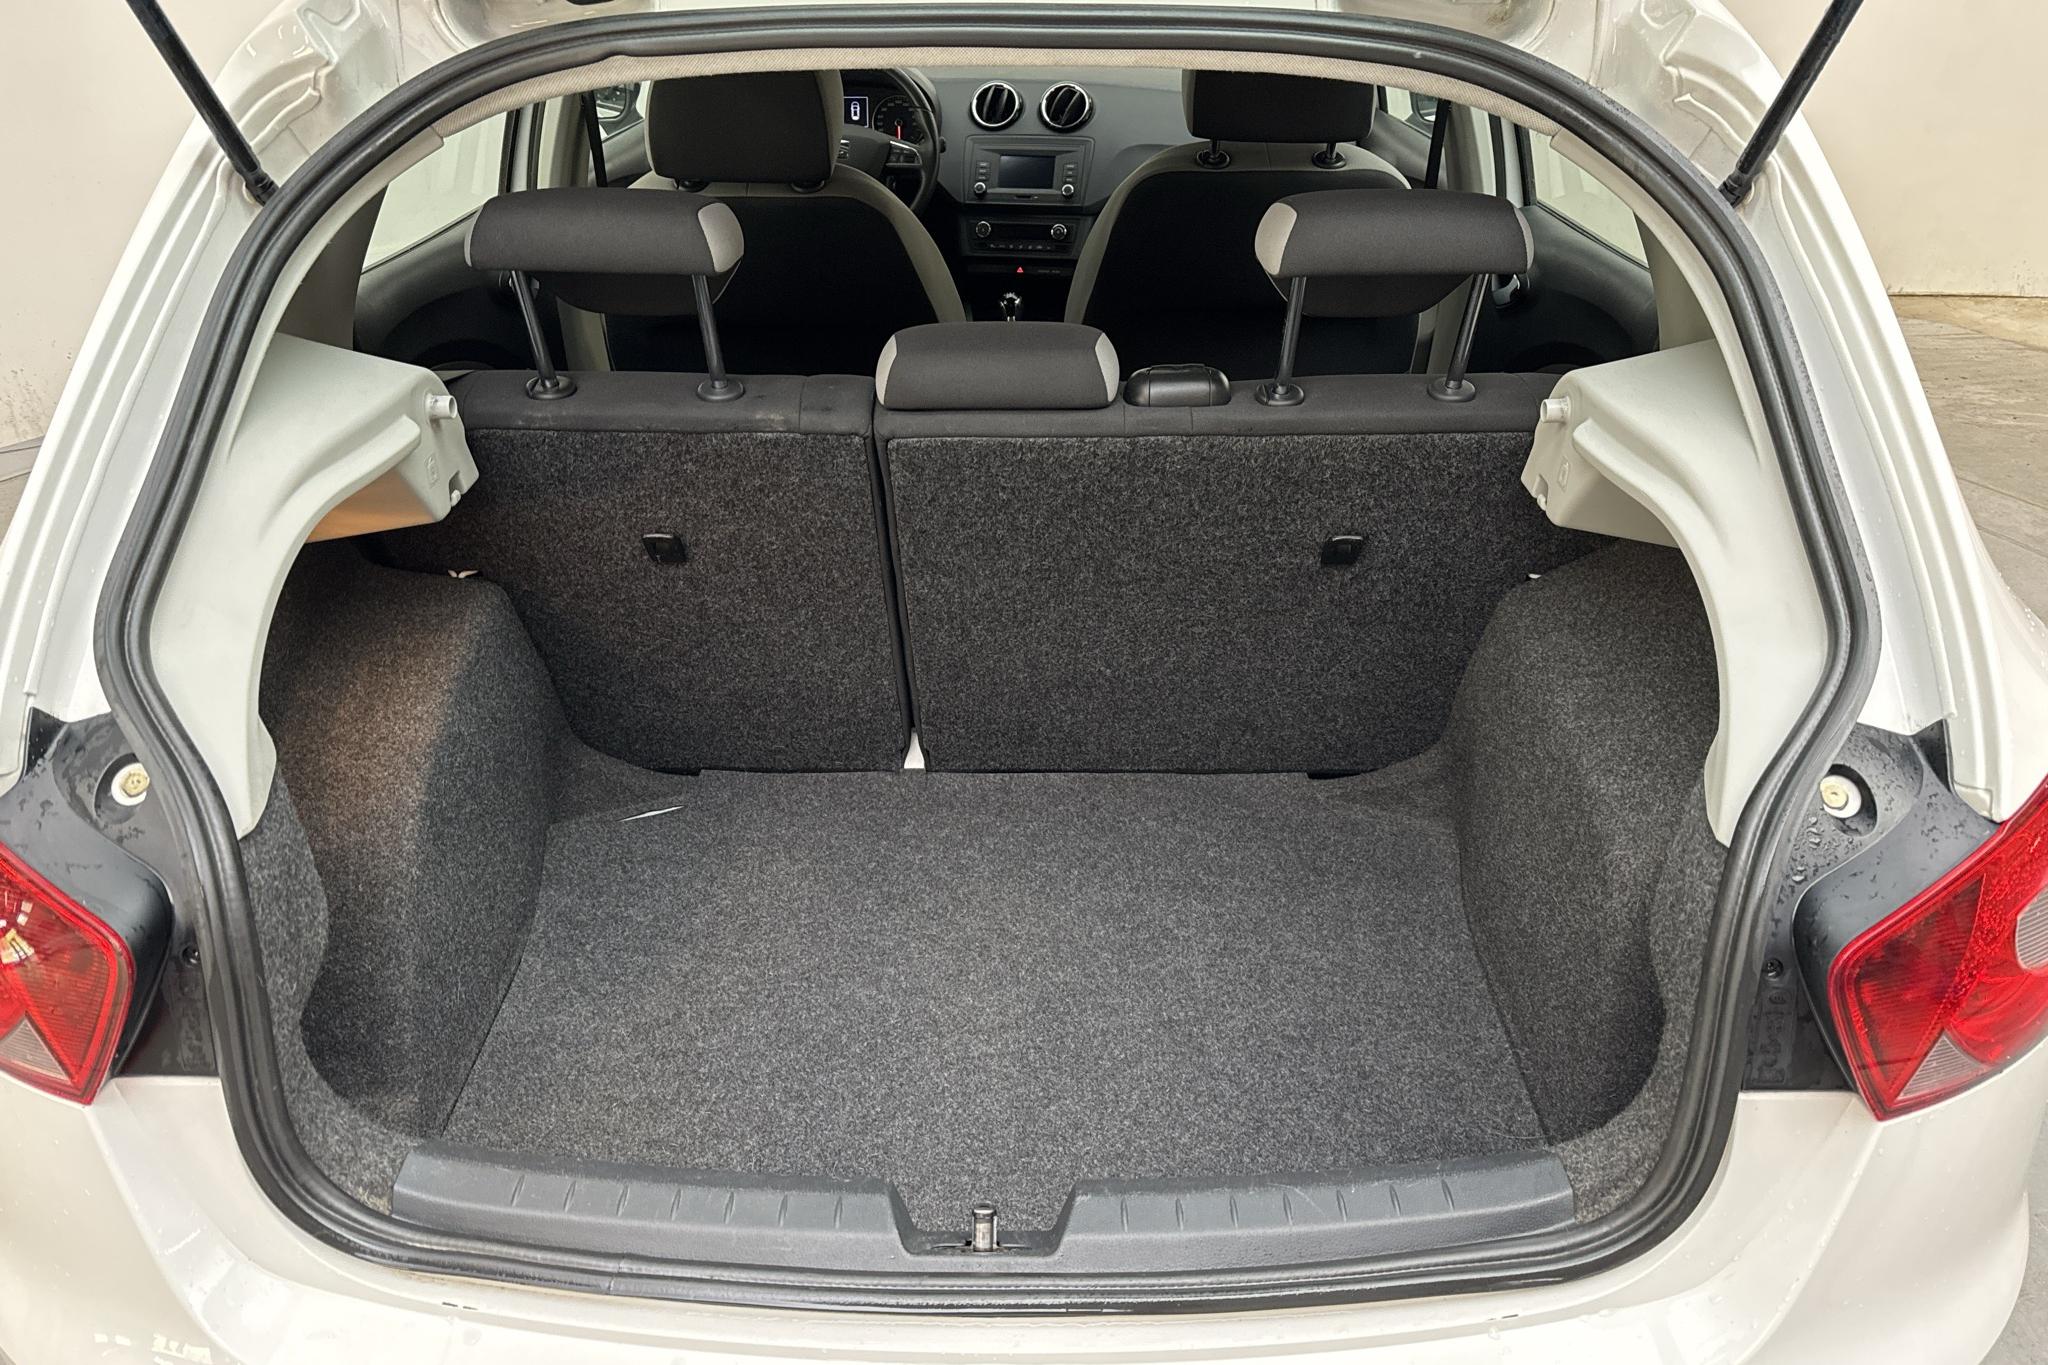 Seat Ibiza 1.2 TSI 5dr (90hk) - 106 810 km - Manual - white - 2017